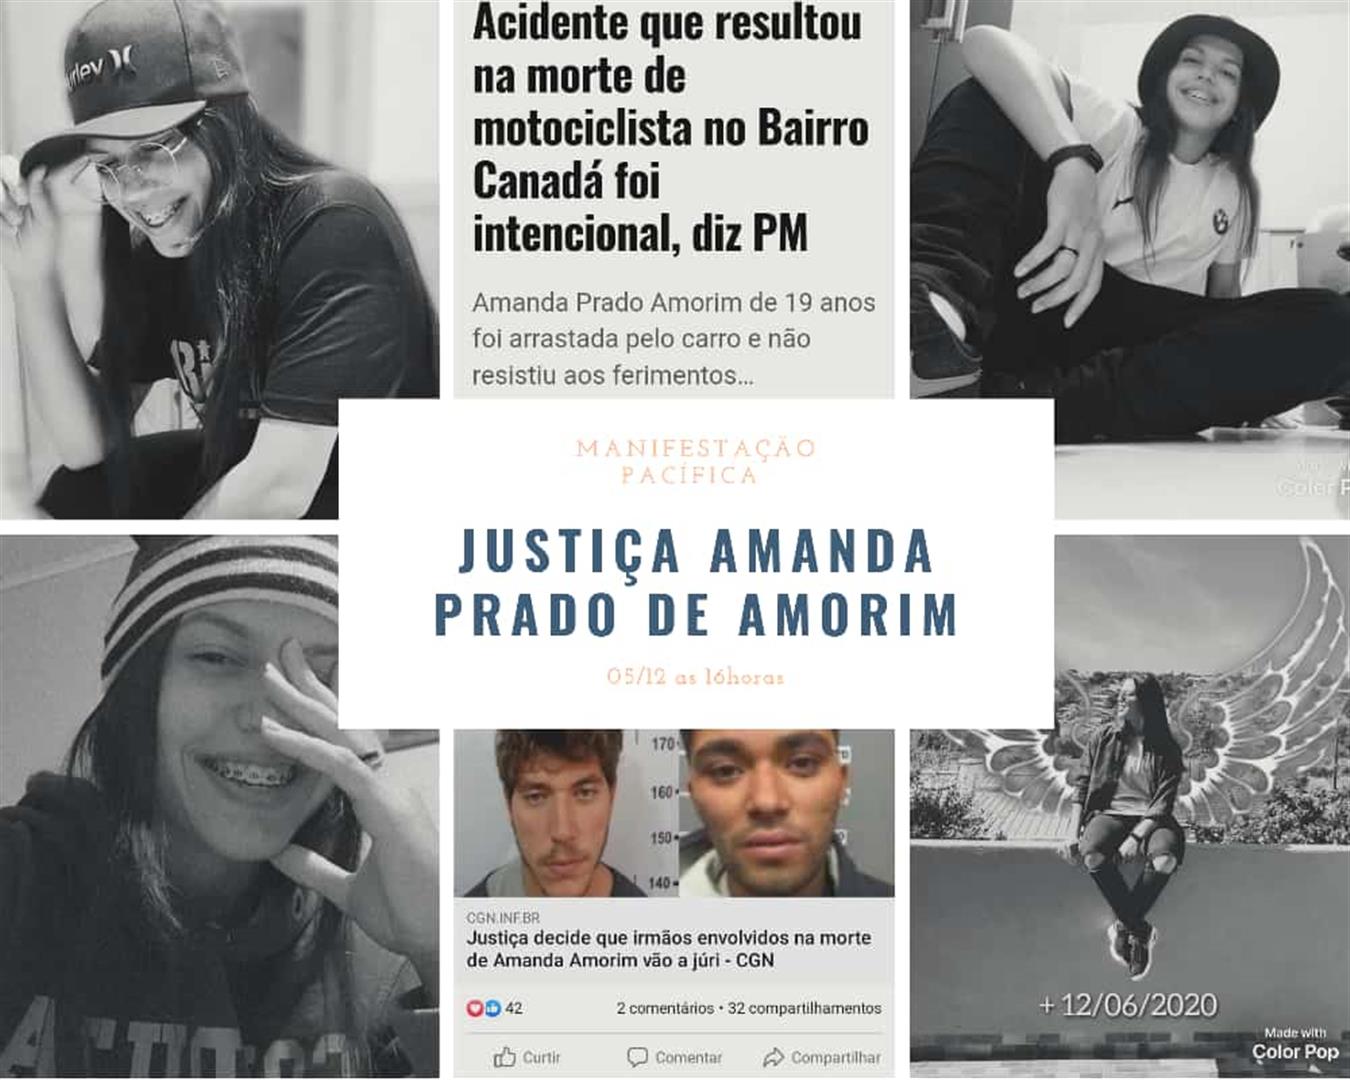 Pedindo justiça familiares de Amanda Prado de Amorim realizarão manifestação